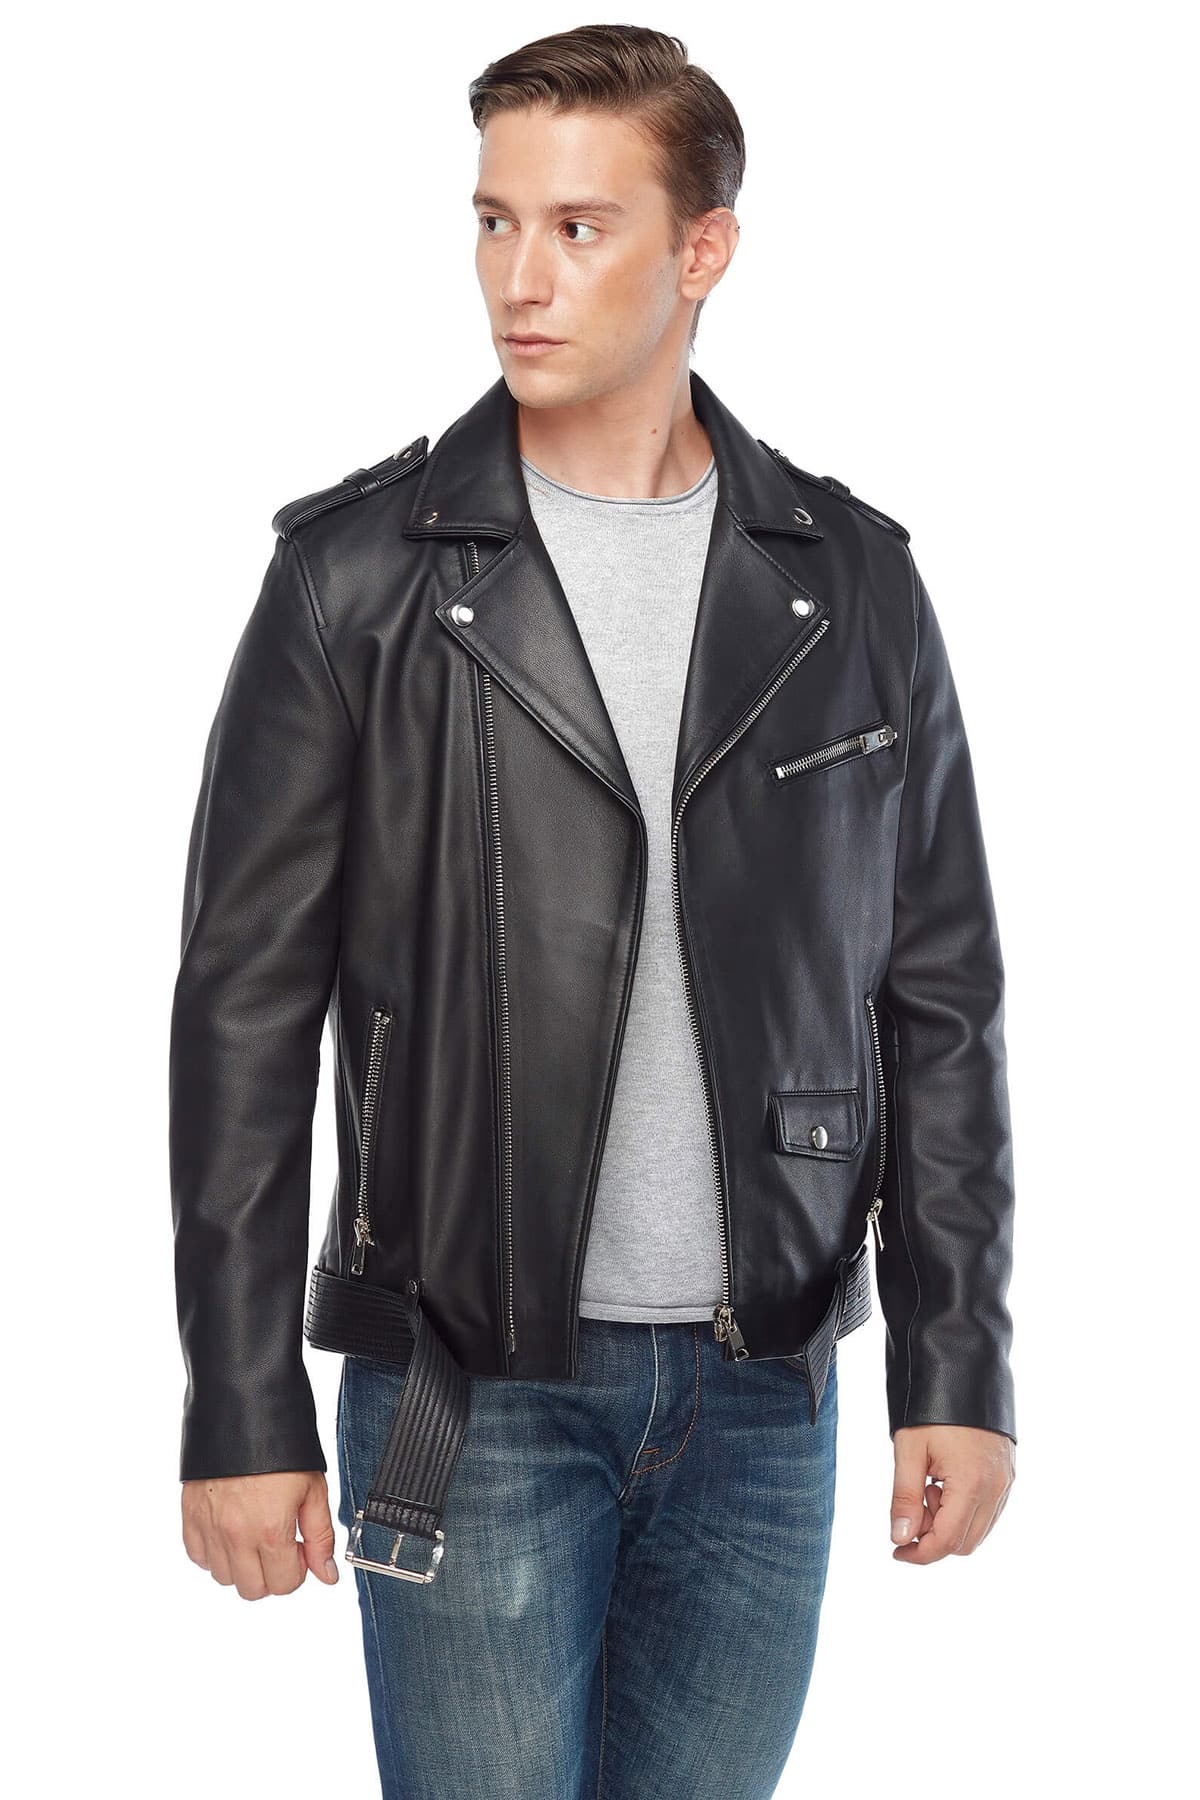 Lewis Tan Genuine Leather Biker Jacket Black